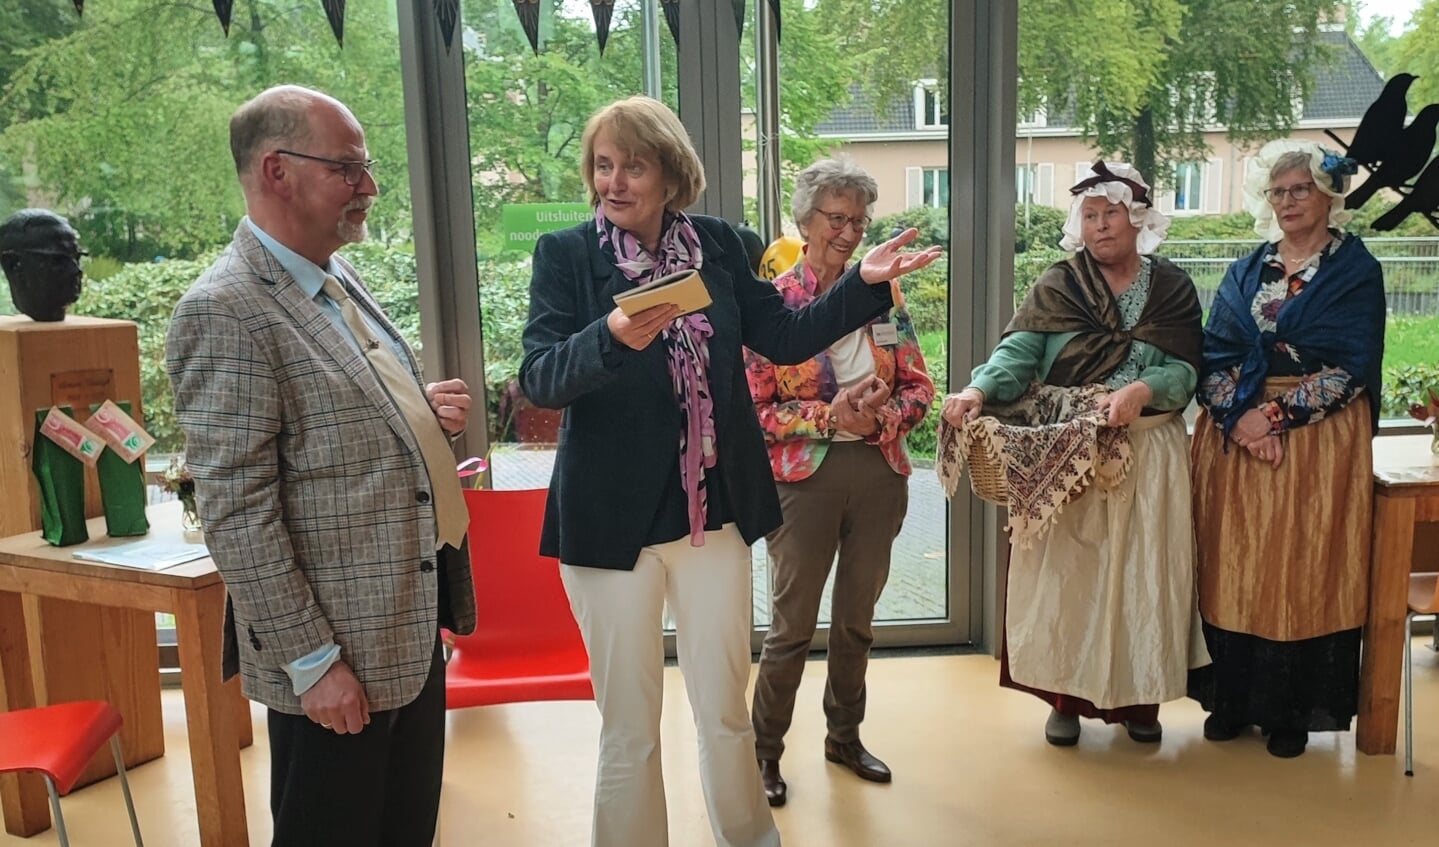  Erelid Roland van Barneveld overhandigde het jubileumboek aan wethouder Karin Oyevaar, onder toeziend oog van voorzitter Anneke Zevenbergen en Ien en Dien.